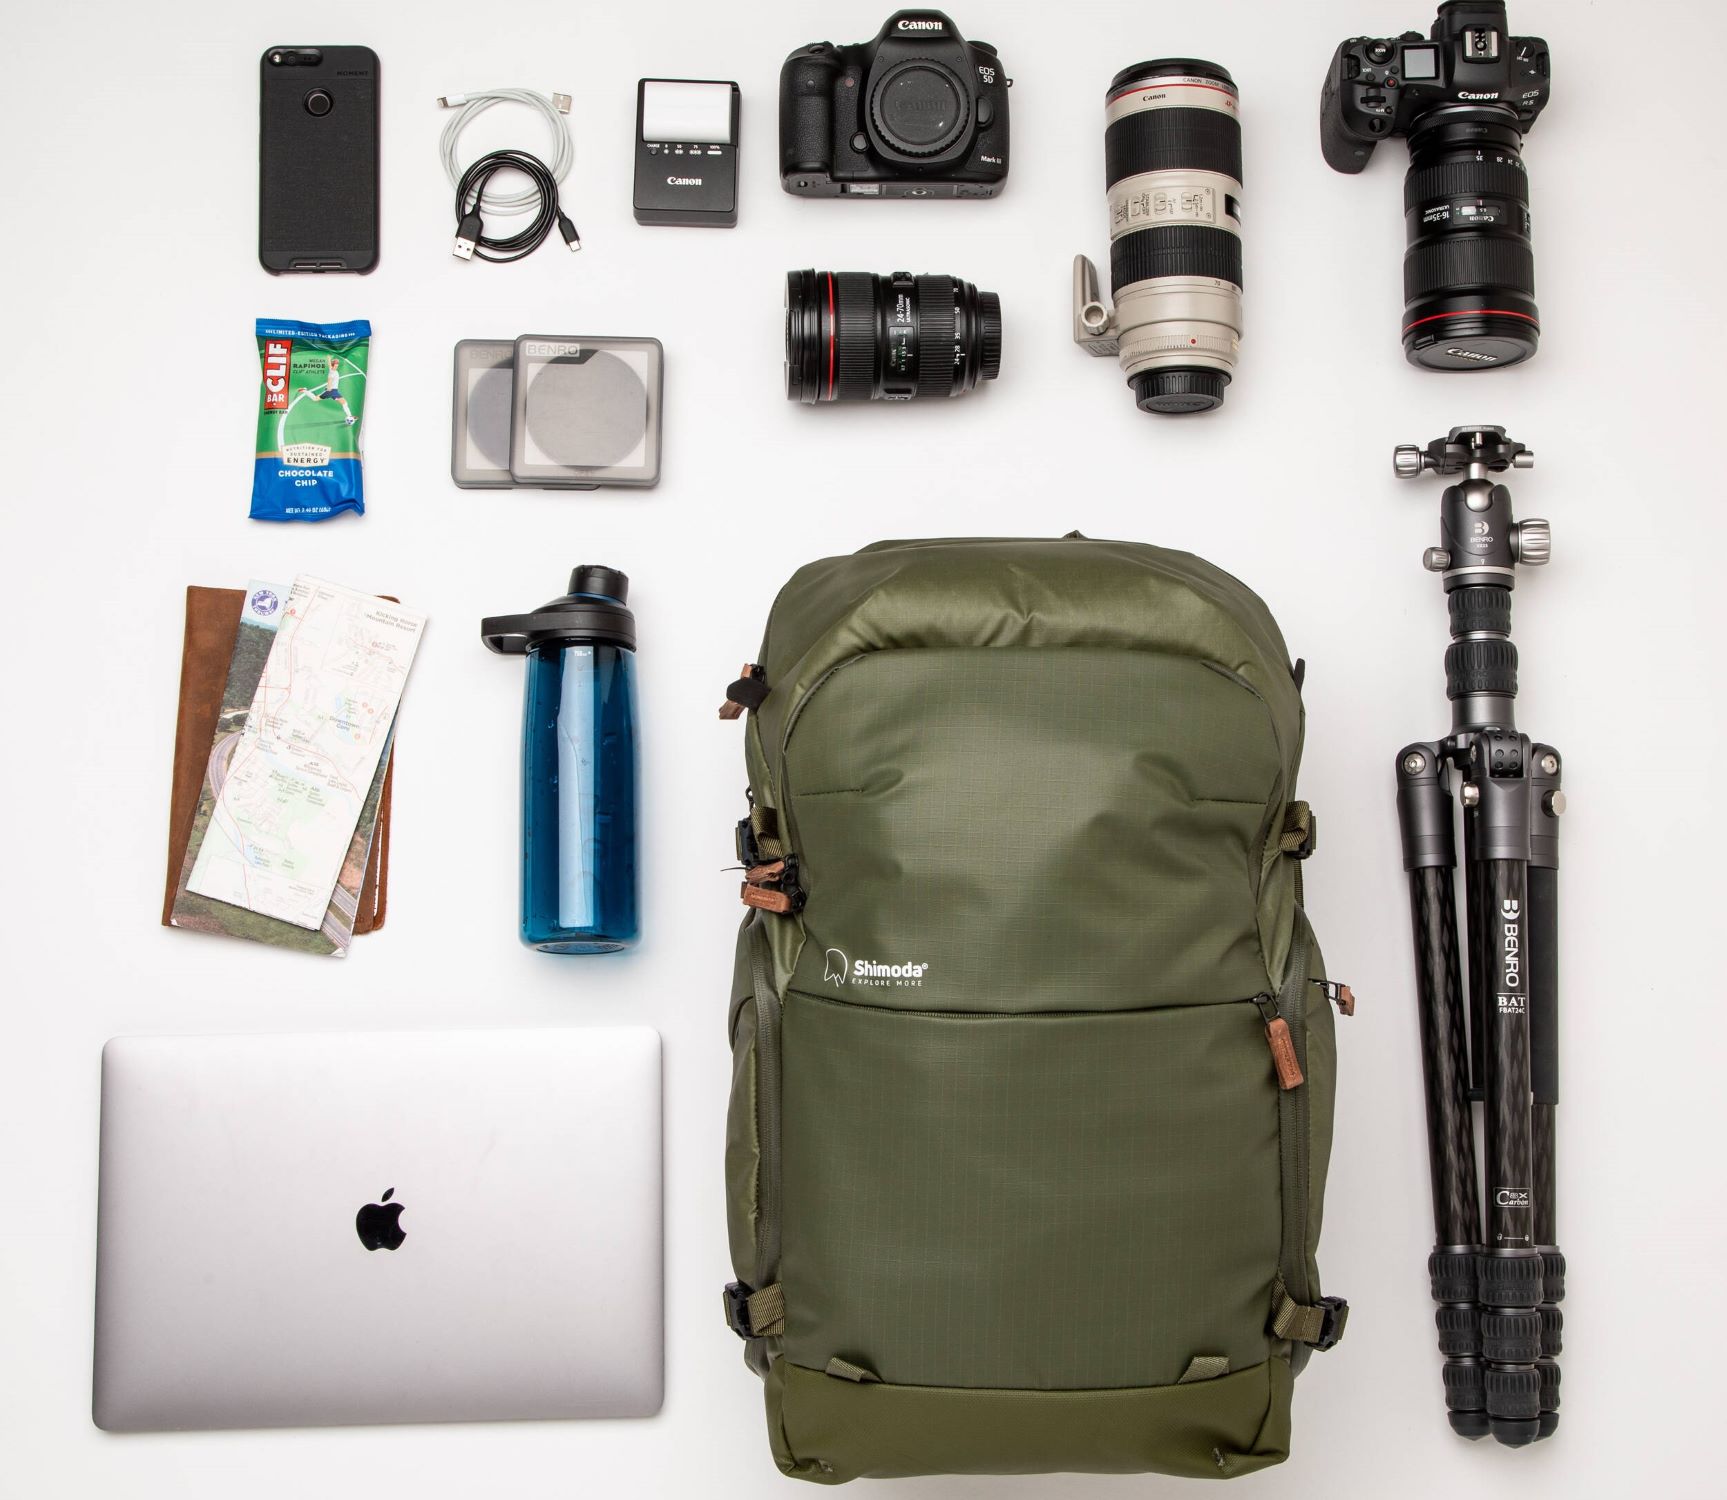 Backpack Shimoda Explore V2 35l Starter Kit green